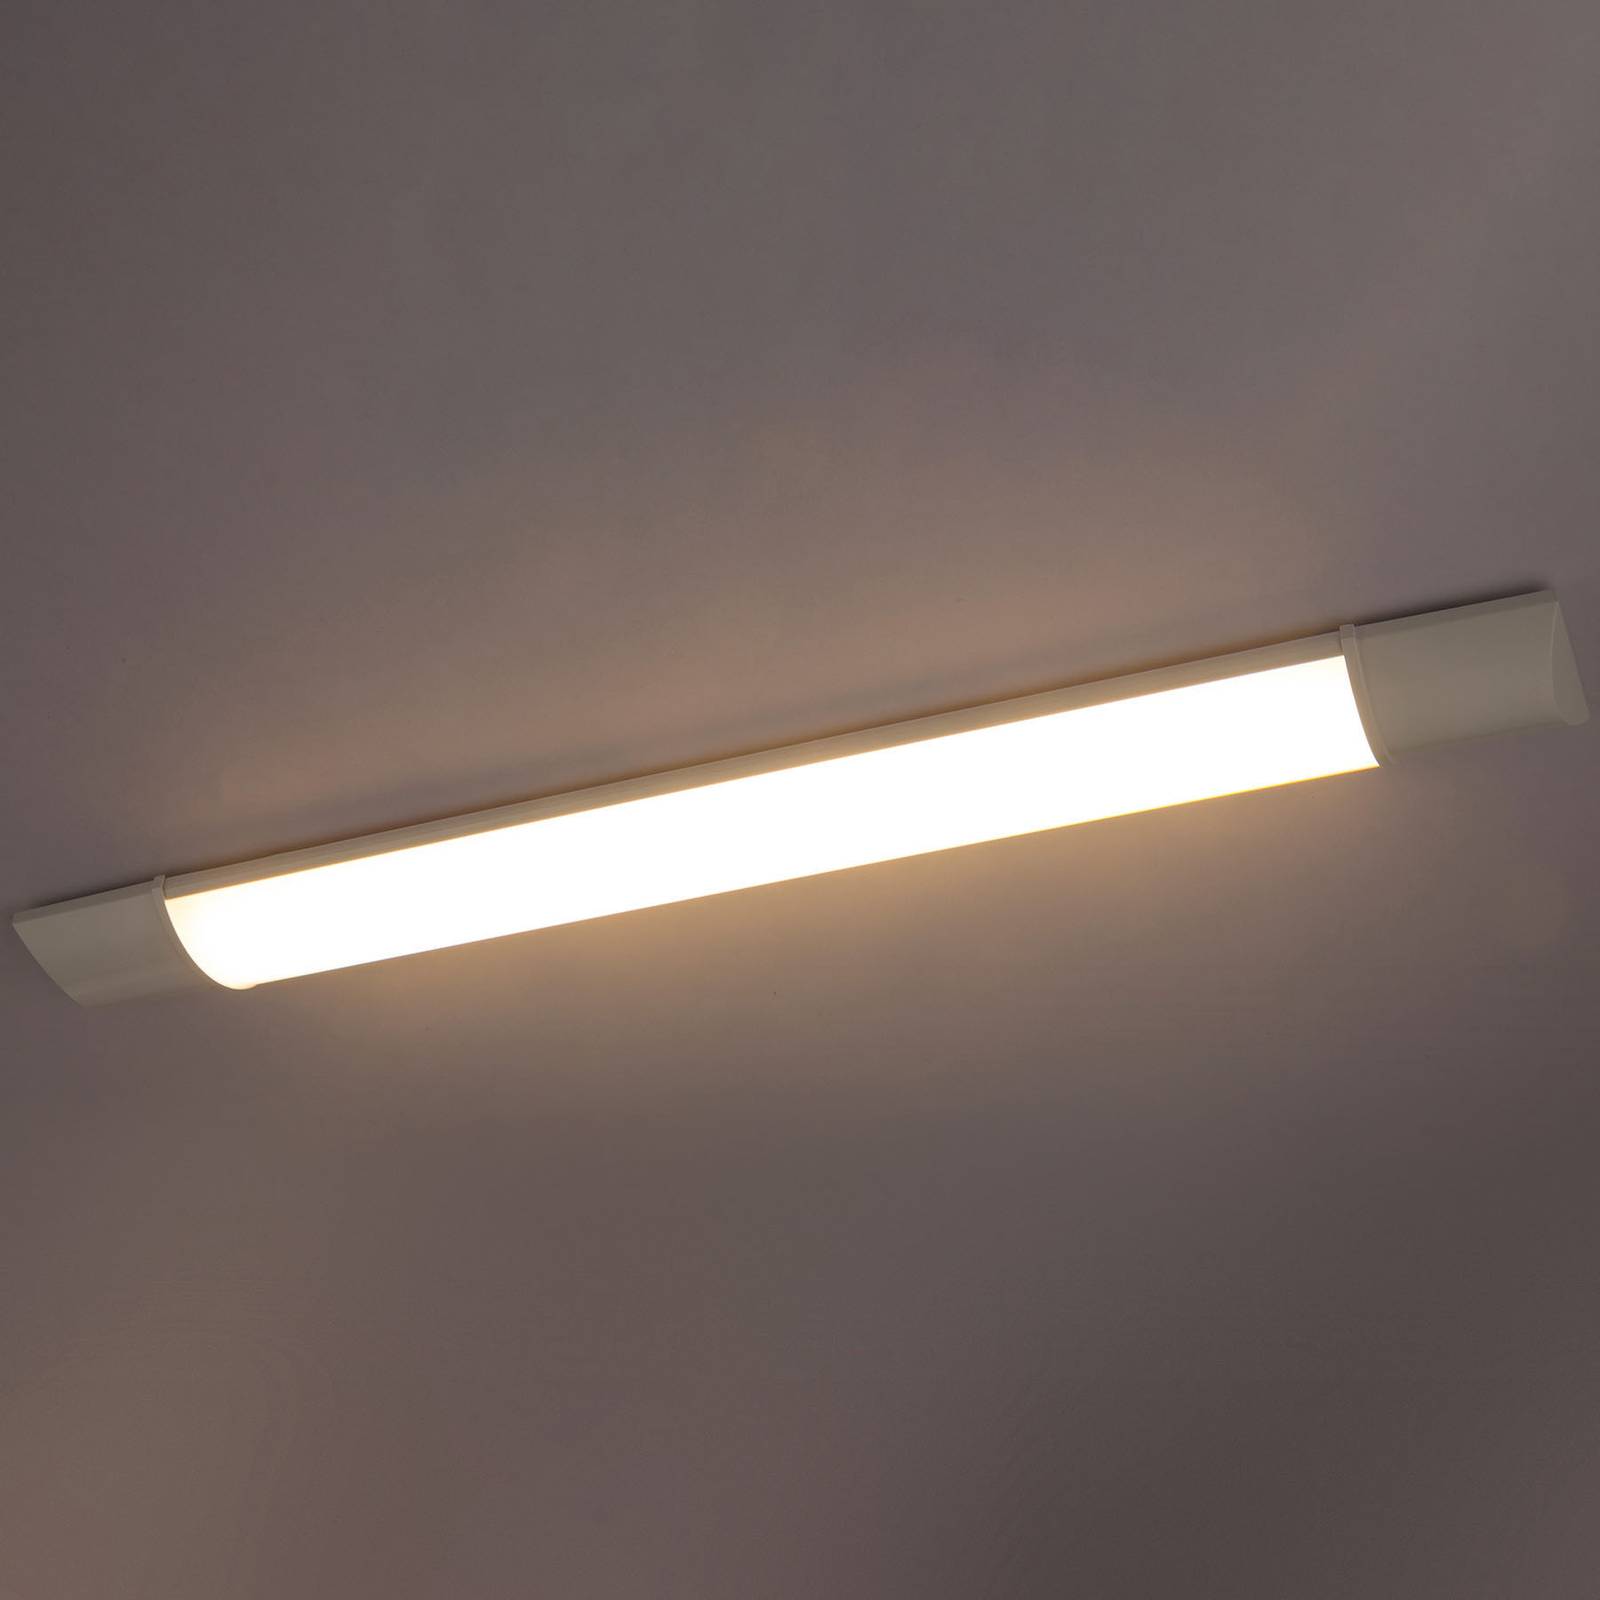 Podskrinkové LED svietidlo Obara, IP20, 60 cm